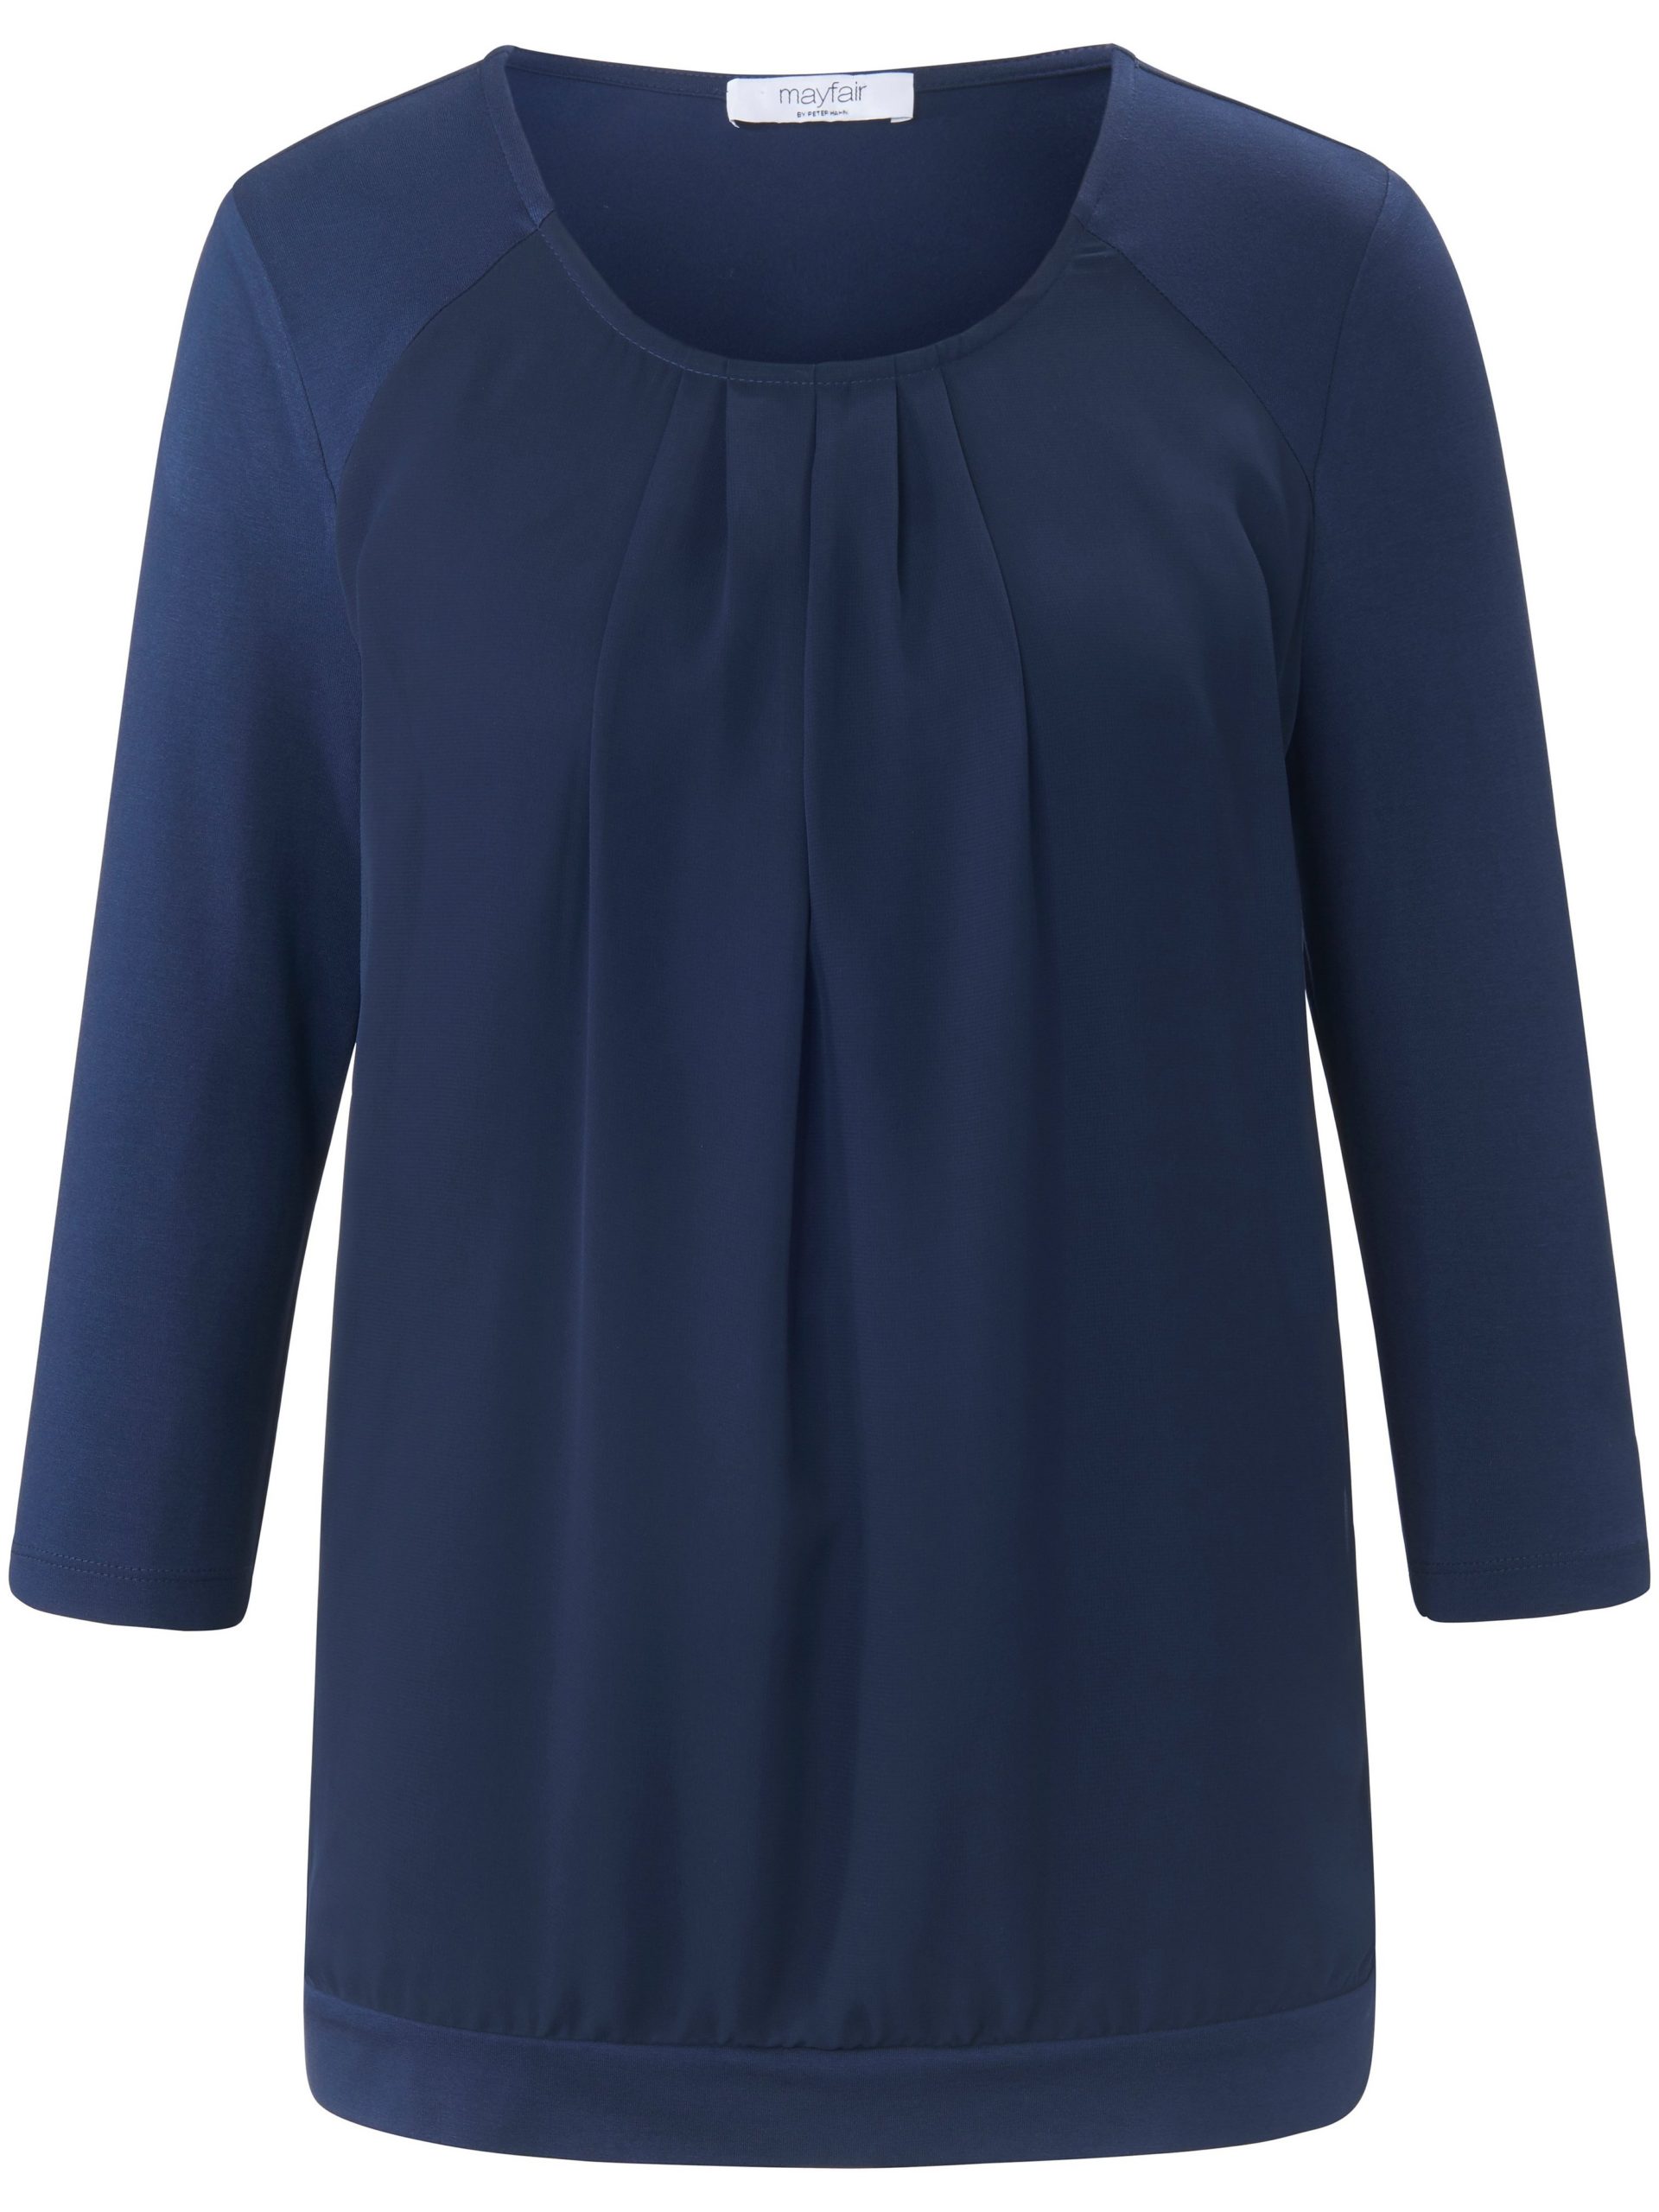 Shirt met ronde hals en 3/4-mouwen Van mayfair by Peter Hahn blauw Kopen